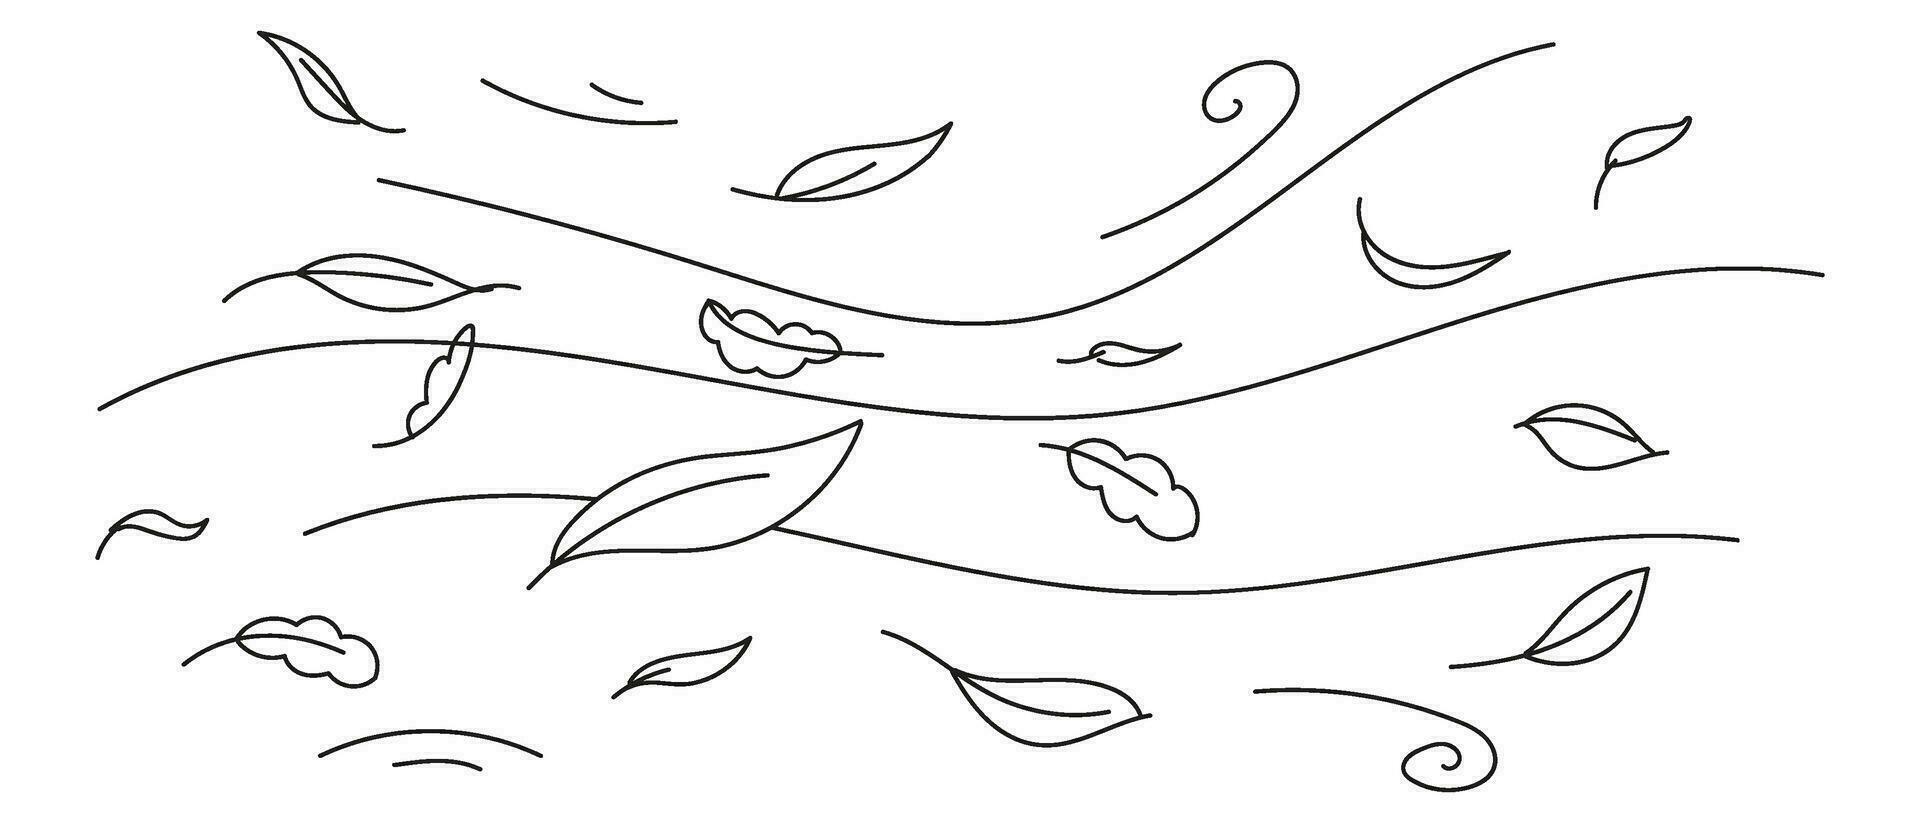 tekening wind draag- gedaald bladeren. lijn kunst vector geïsoleerd illustratie